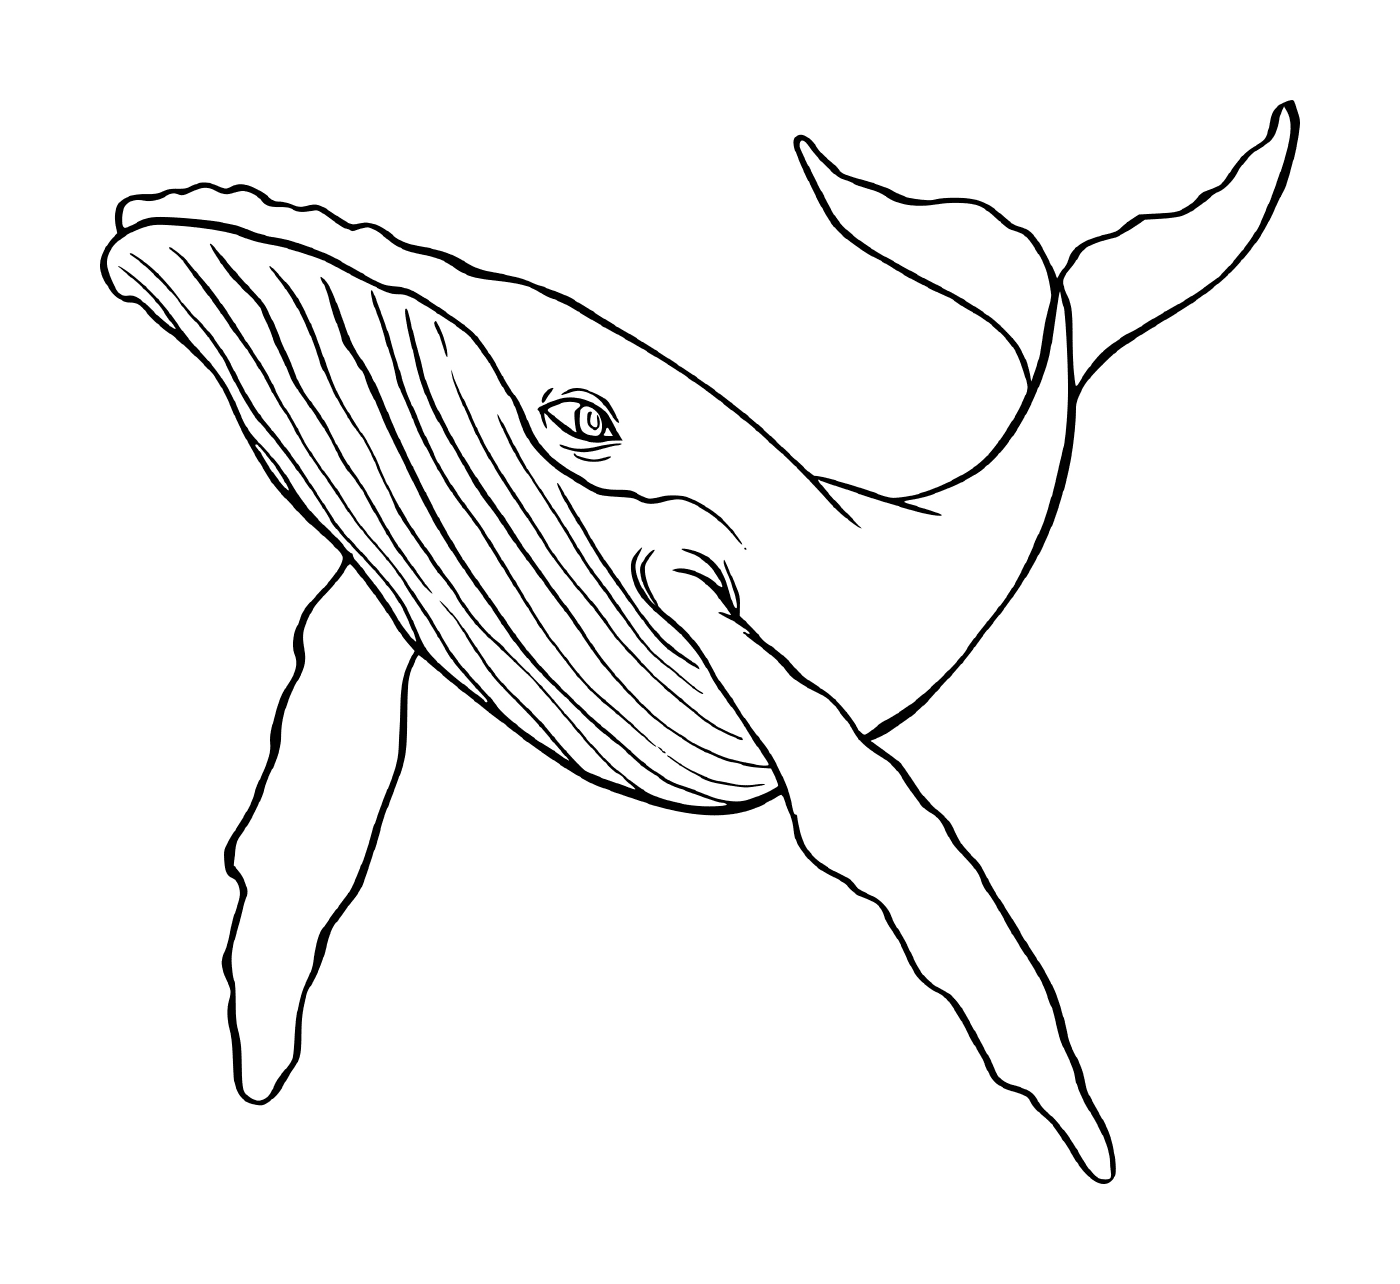  una balena che nuota nell'acqua 